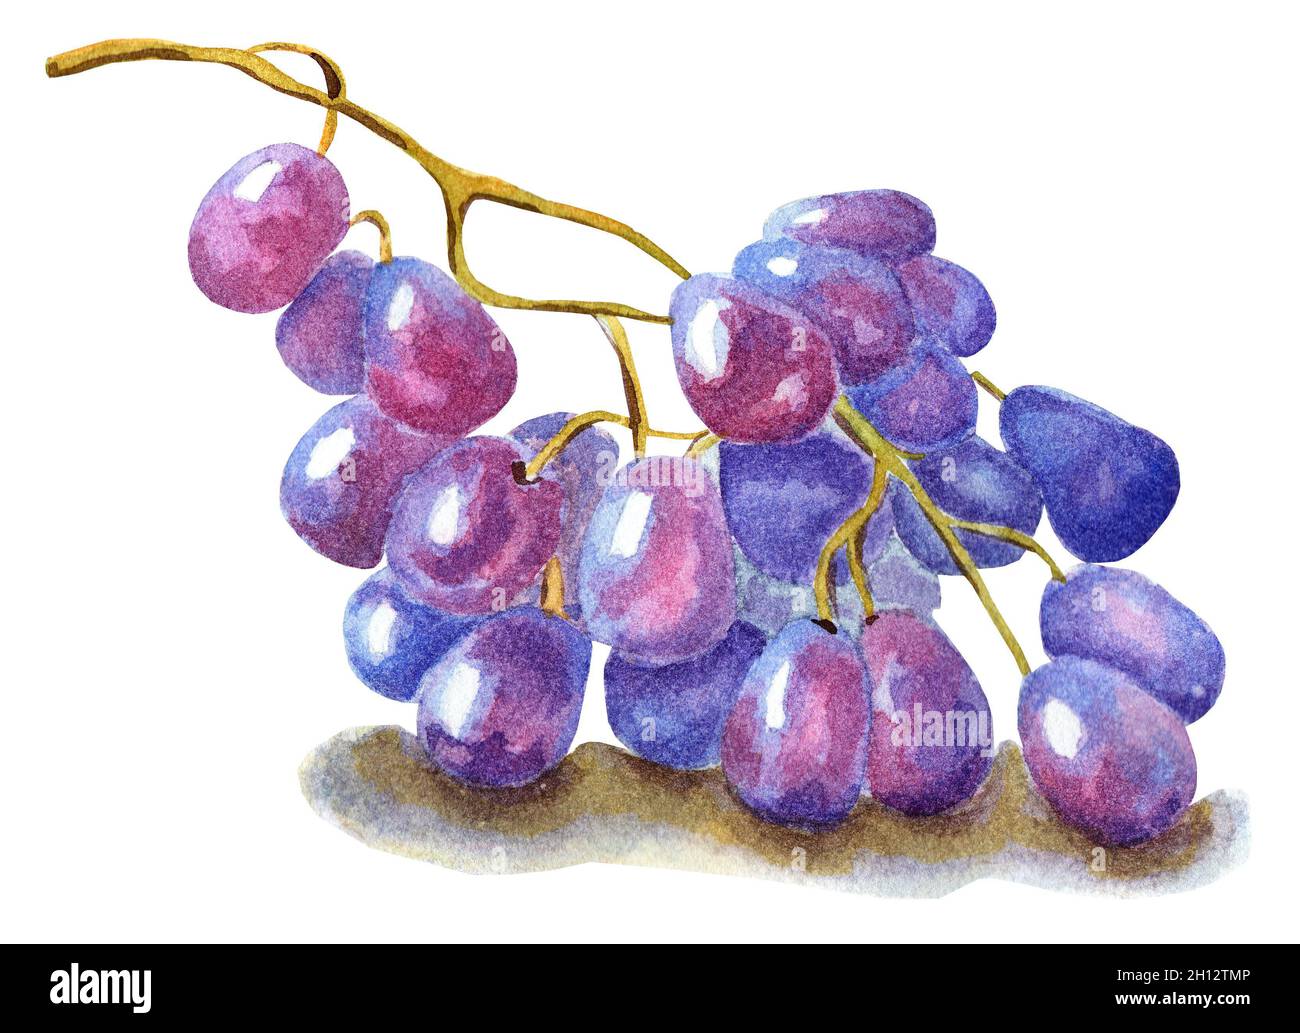 Un bouquet de raisins violets.Récolte.Baies.Illustration aquarelle isolée sur fond blanc.Dessiné à la main. Banque D'Images